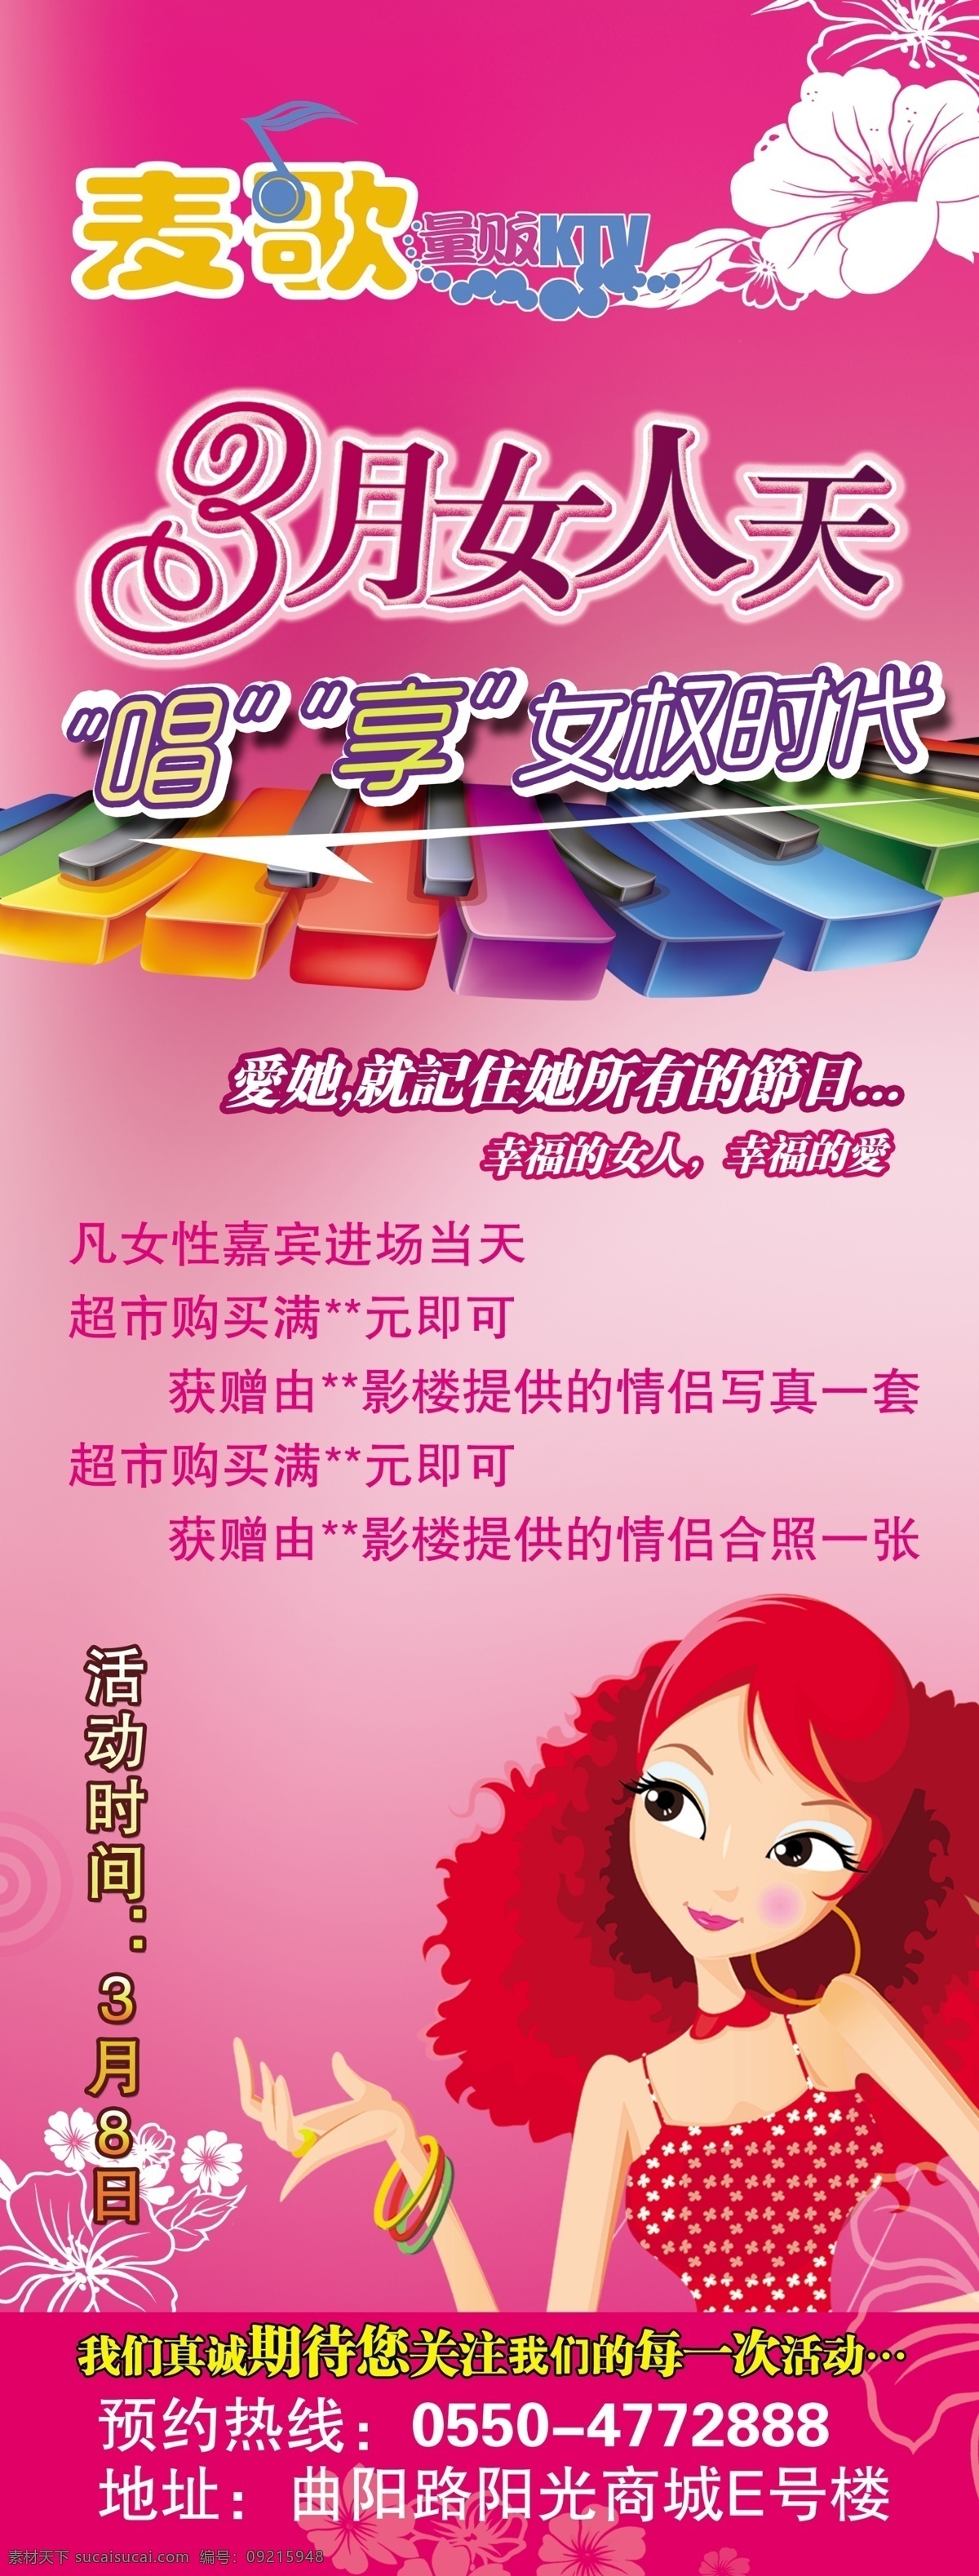 3月女人天 粉色背景 广告设计模板 花朵 键盘 卡通女性人物 三八妇女节 海报 源文件 唱享女权时代 展板模板 海报背景图